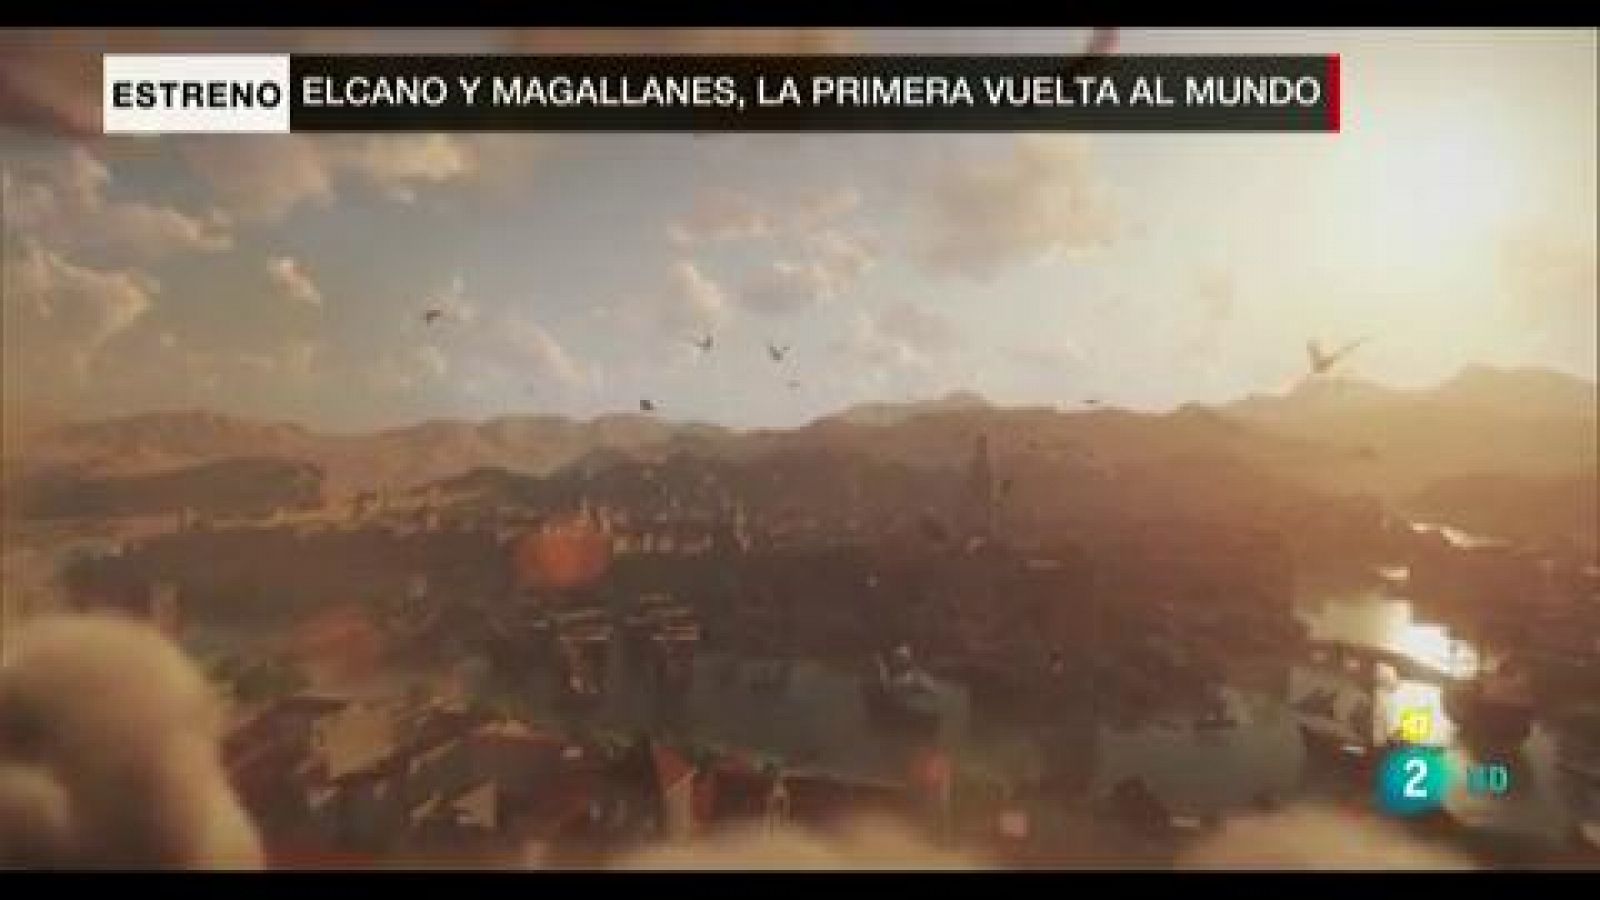 'Elcano y Magallanes'